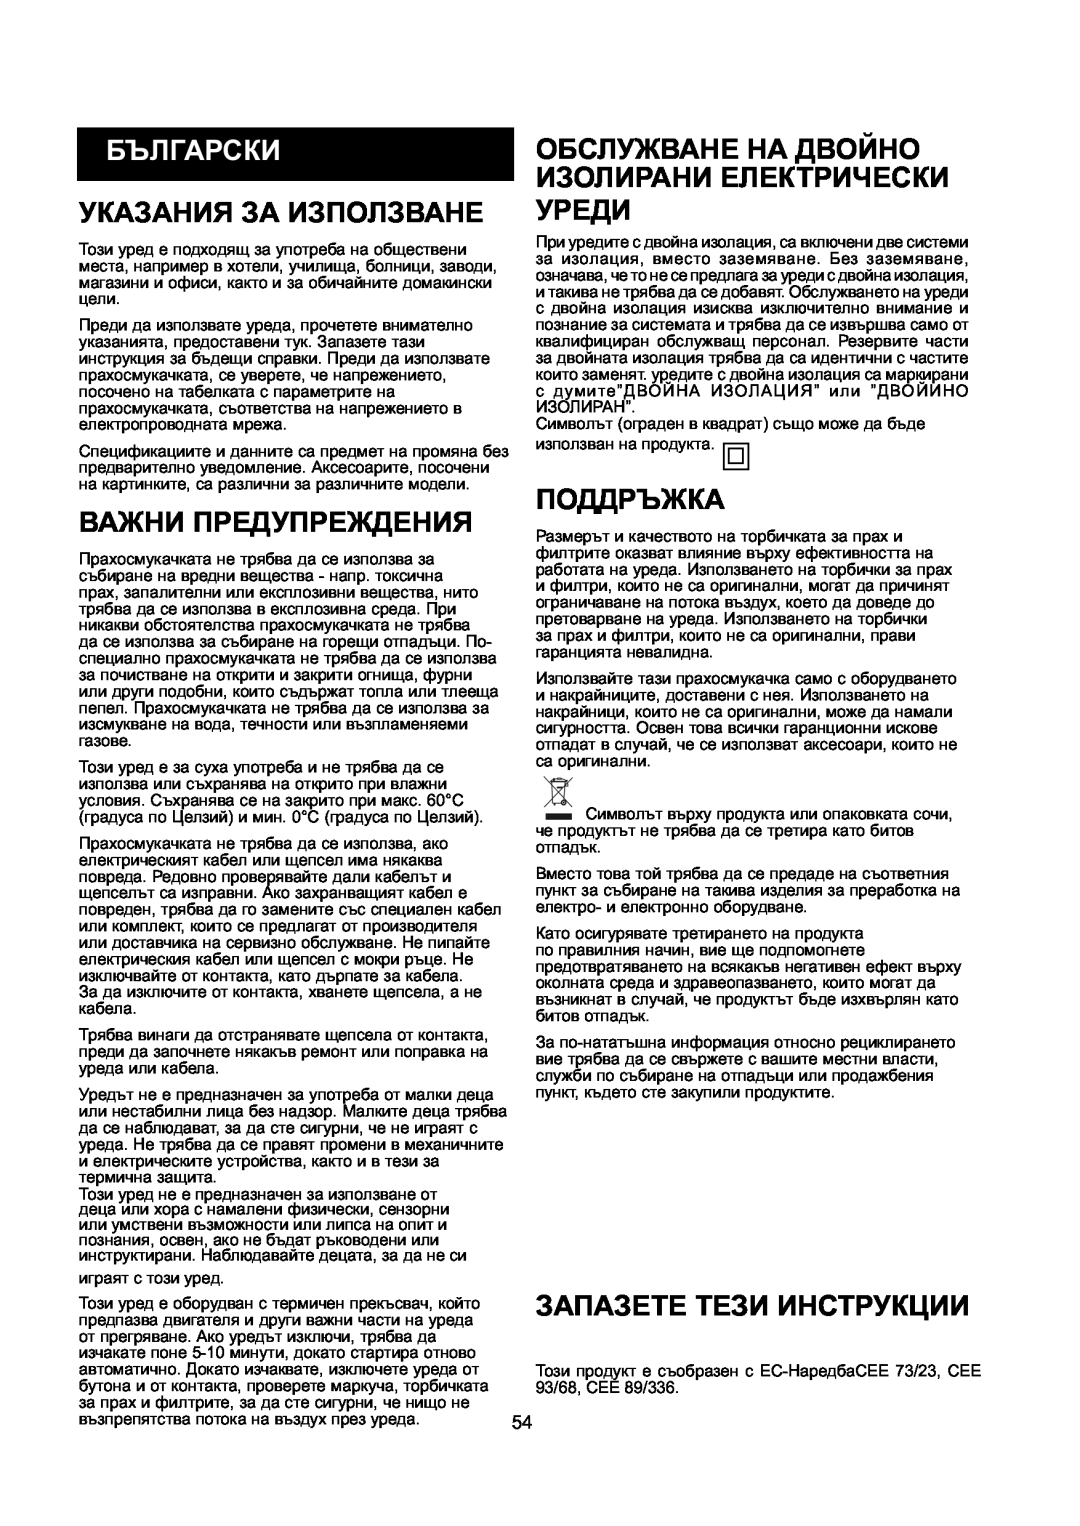 Nilfisk-ALTO GD 10 Back Български, Указания За Използване Уреди, Важни Предупреждения, Поддръжка, Запазете Тези Инструкции 